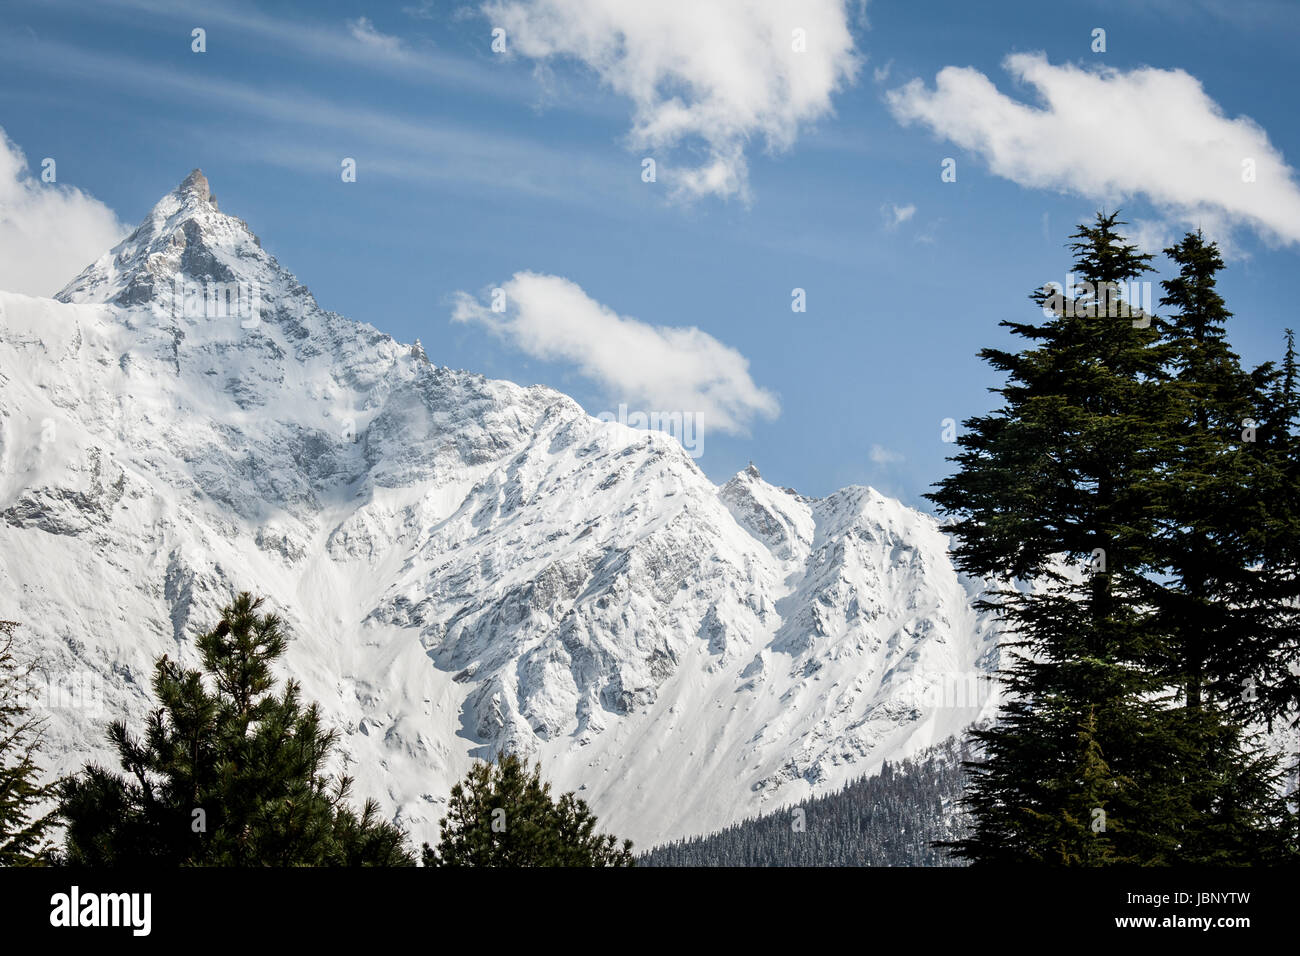 Titanic picos de montañas cubiertos de nieve de la sagrada Kinner Kailash a una altitud de 6.050 m. Imagen fotografía de paisaje invernal del Himalaya Foto de stock